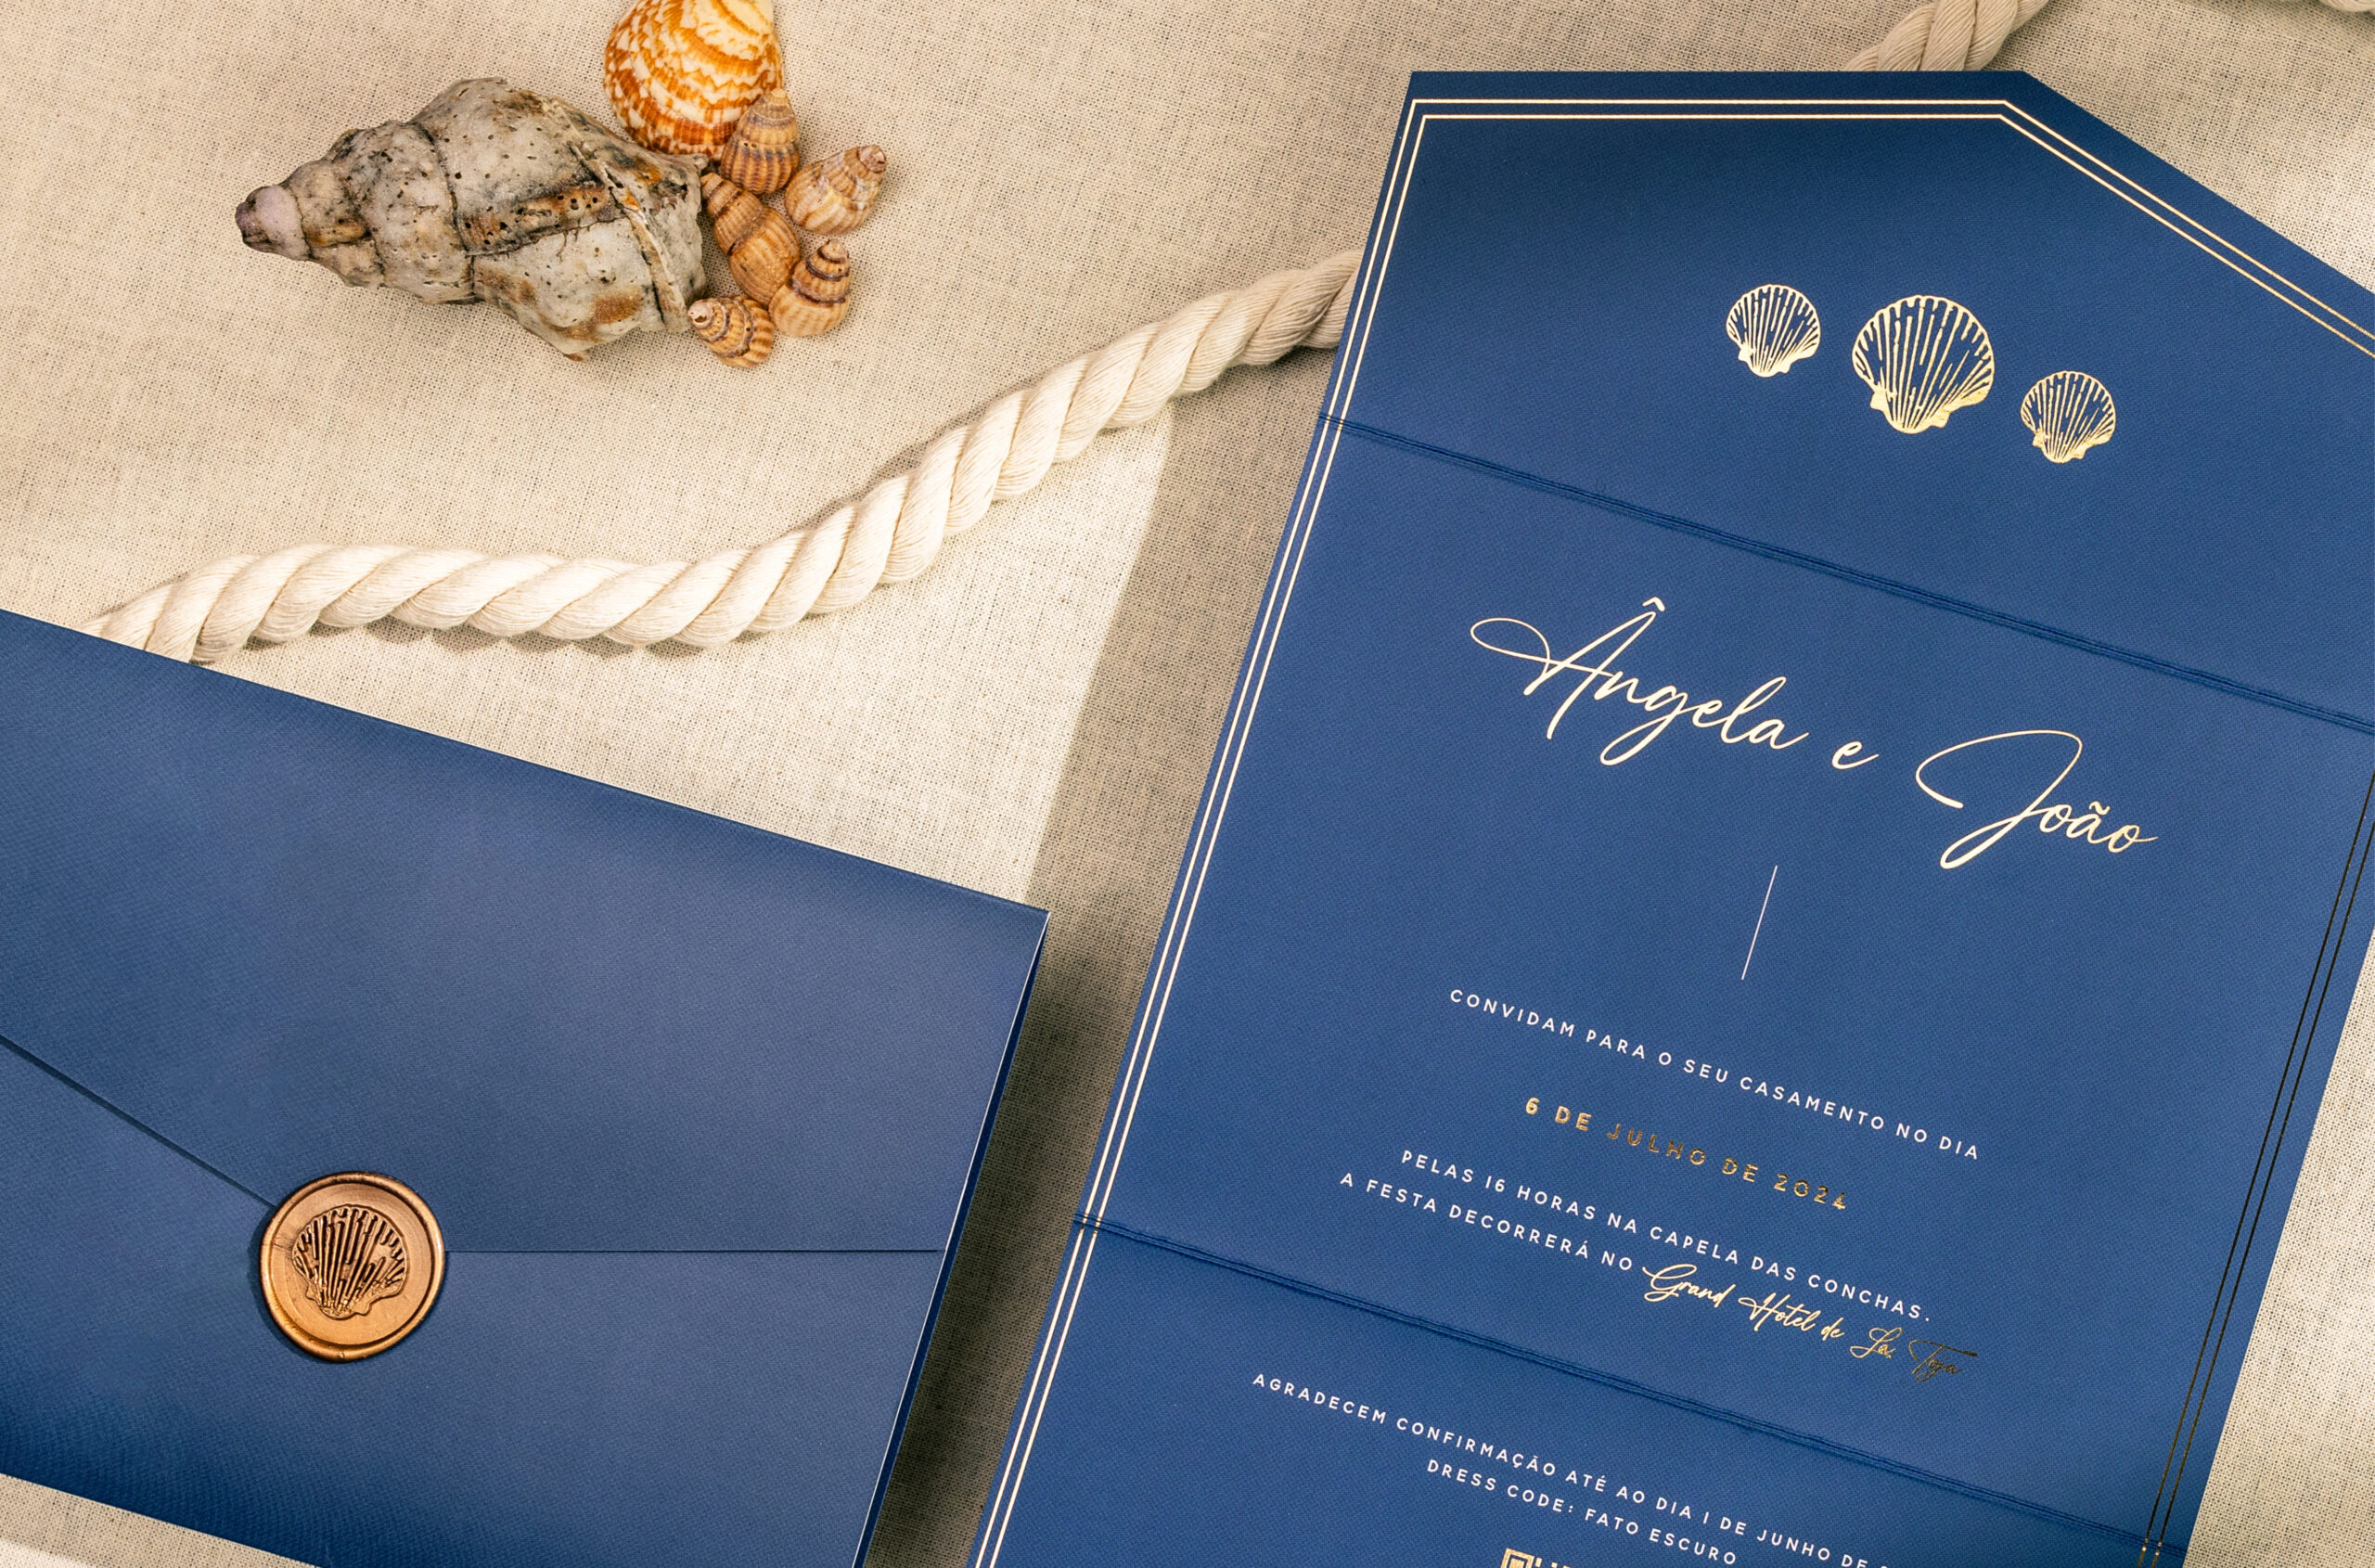 Convite de Casamento com detalhes em dourado e Carta azul marinho com lacre dourado